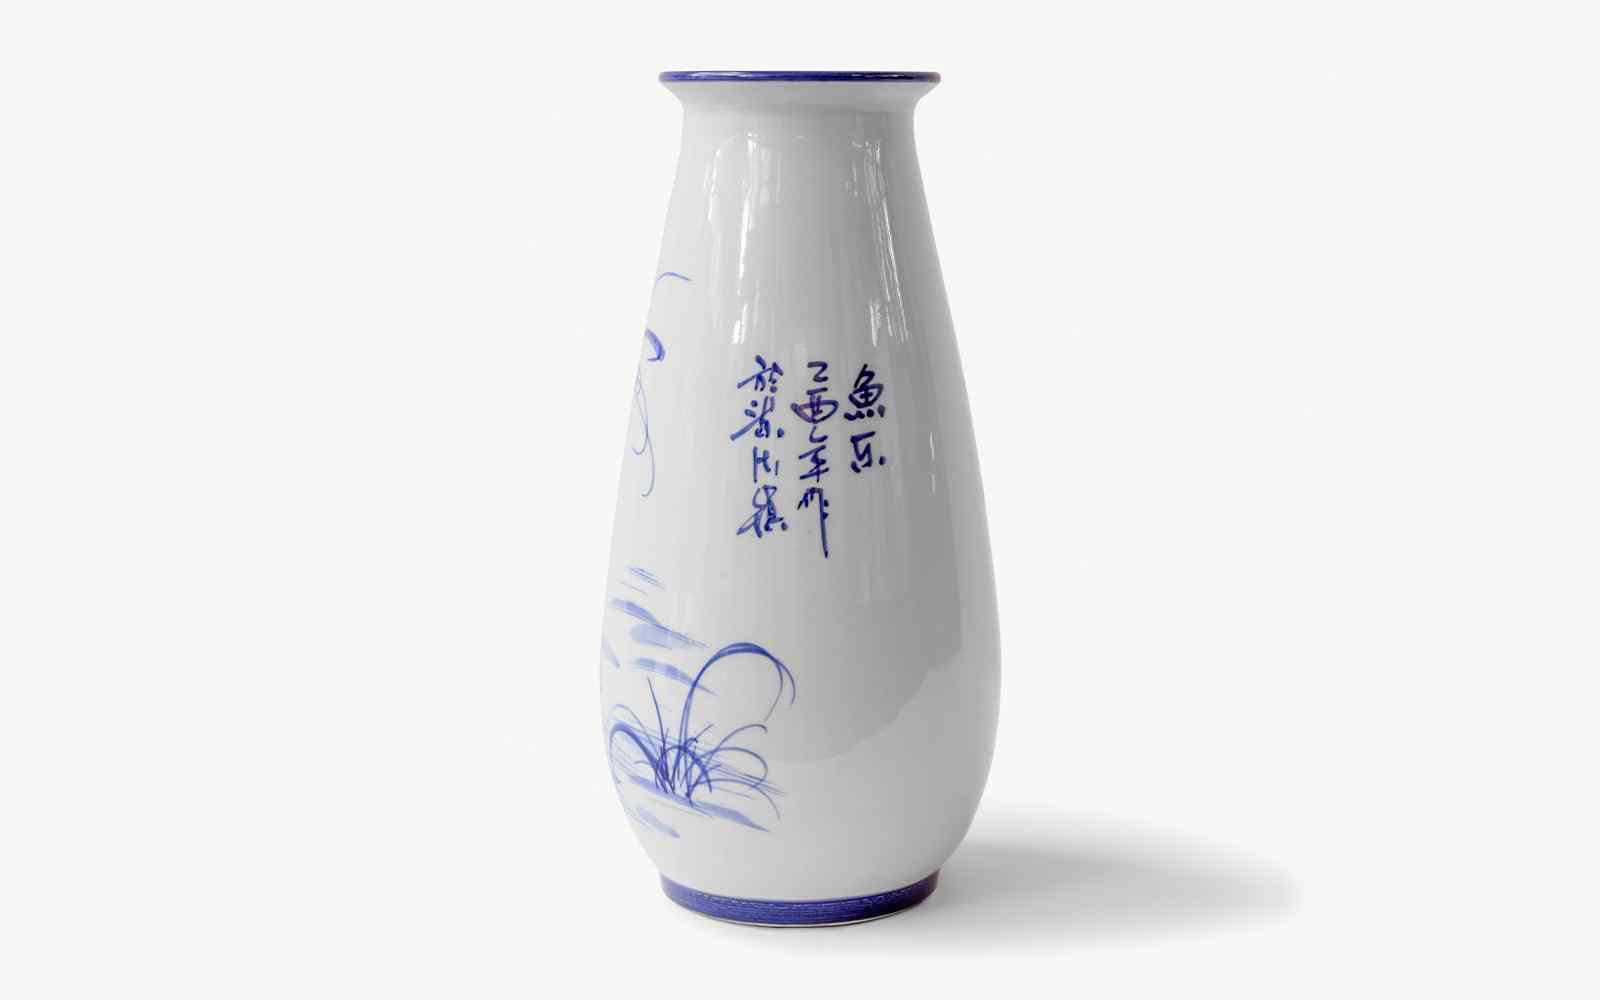 Uzun Mavi Beyaz Porselen Vazo No:4 - lagu.shop - Vazo